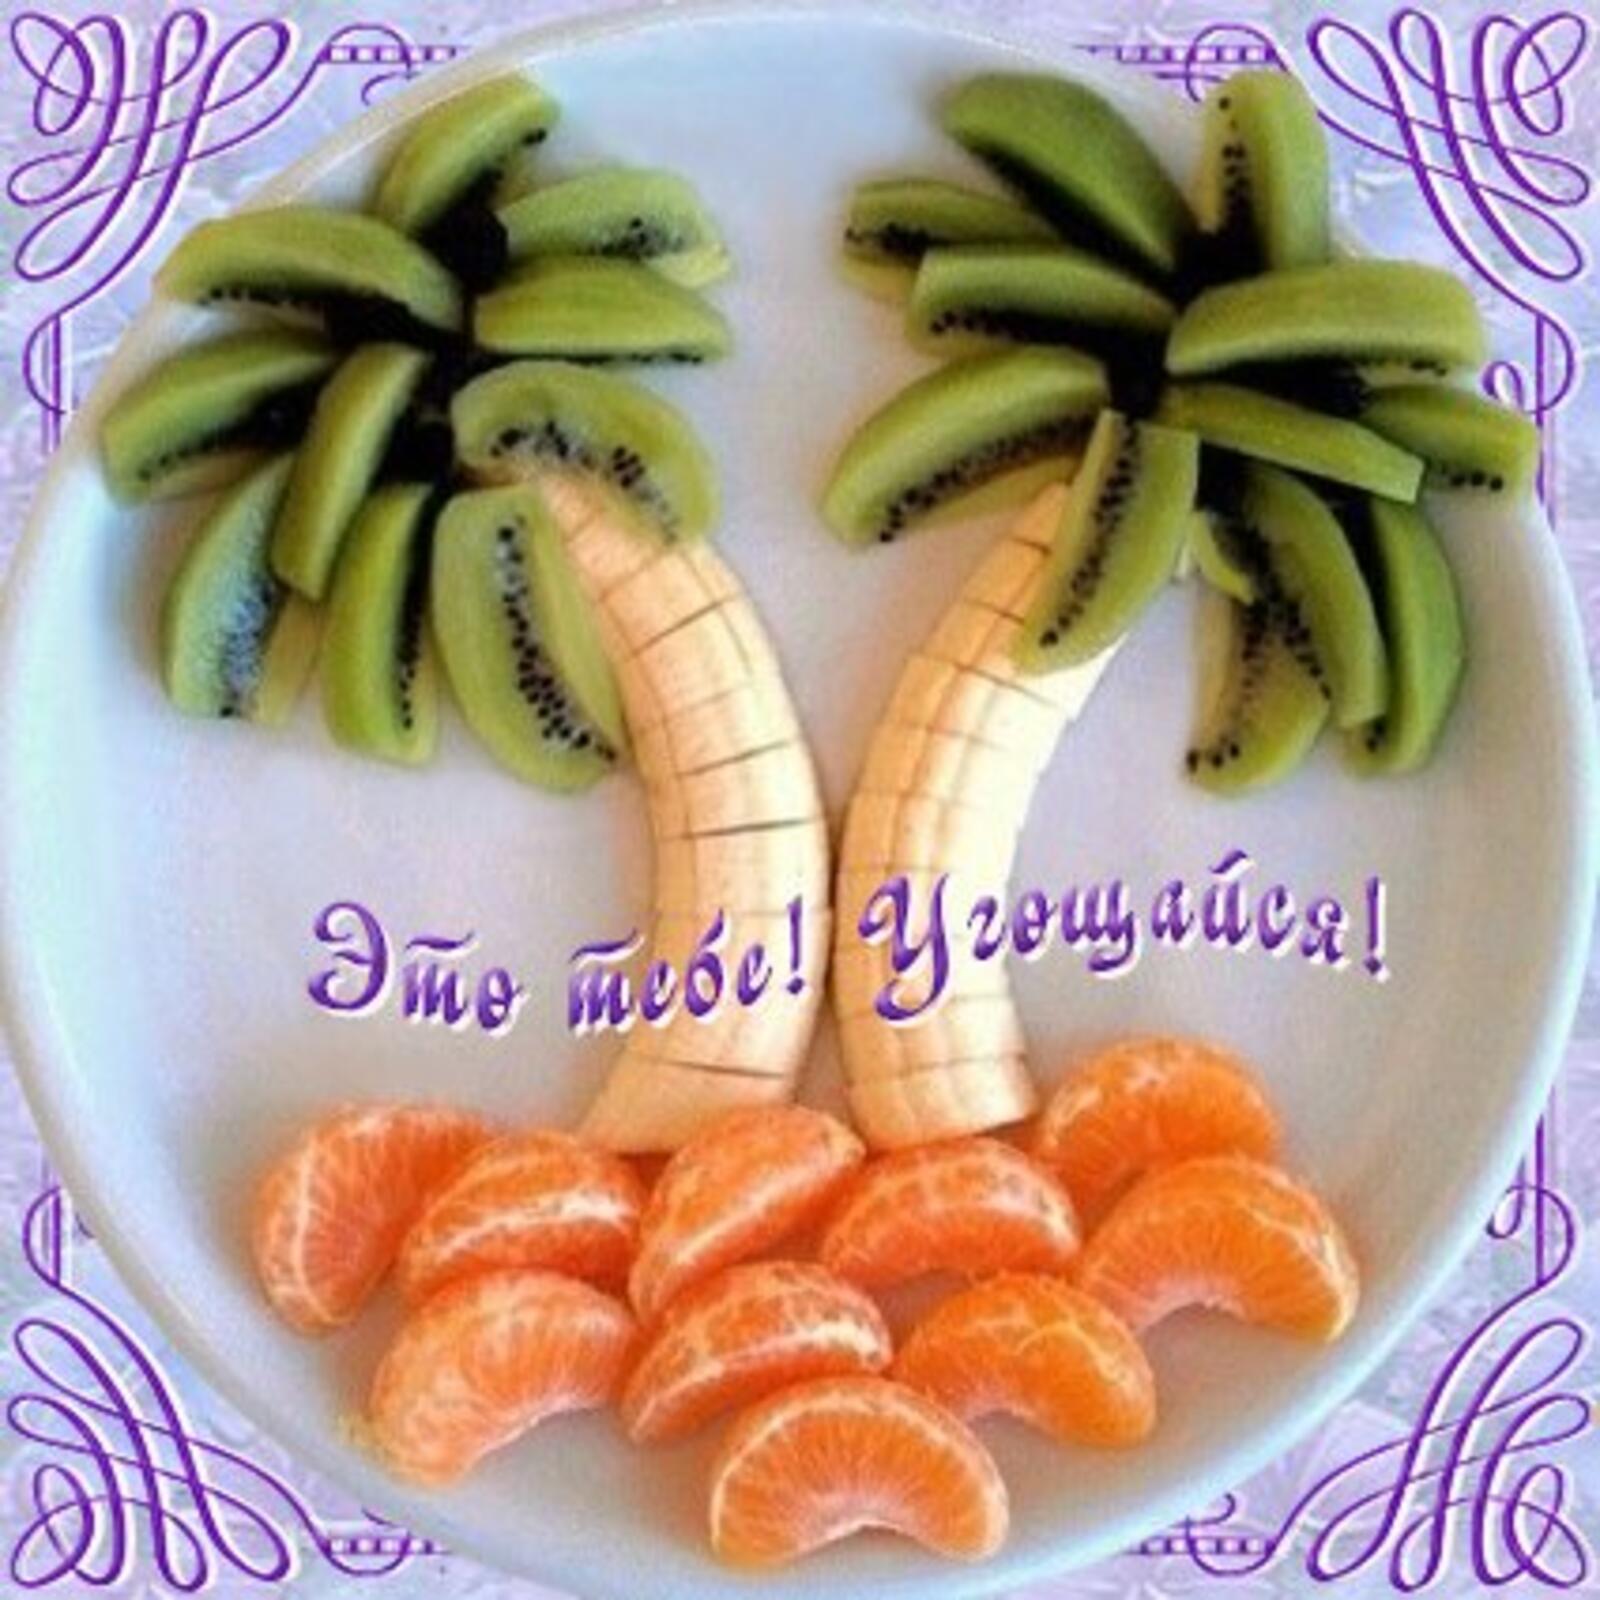 一张以水果 给您的水果卡 棕榈树为主题的明信片